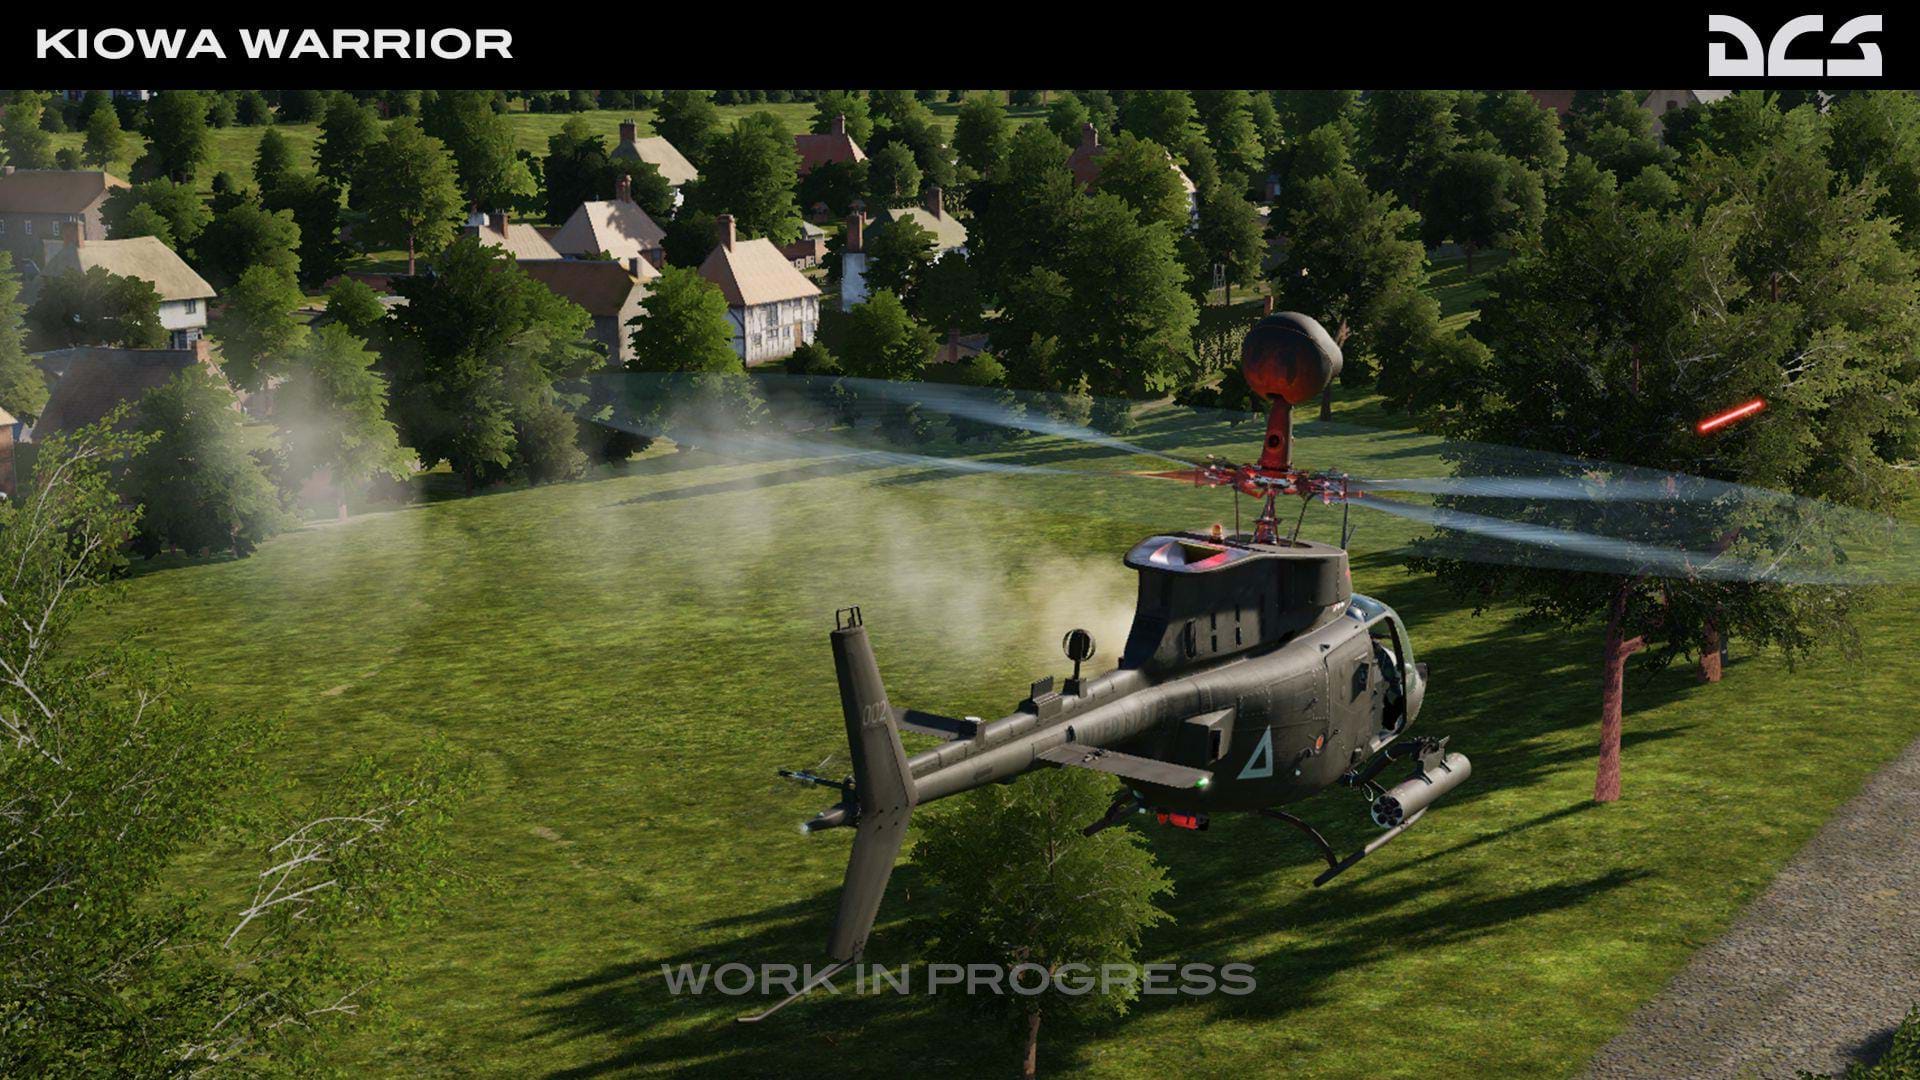 Polychop OH-58 Kiowa for DCS